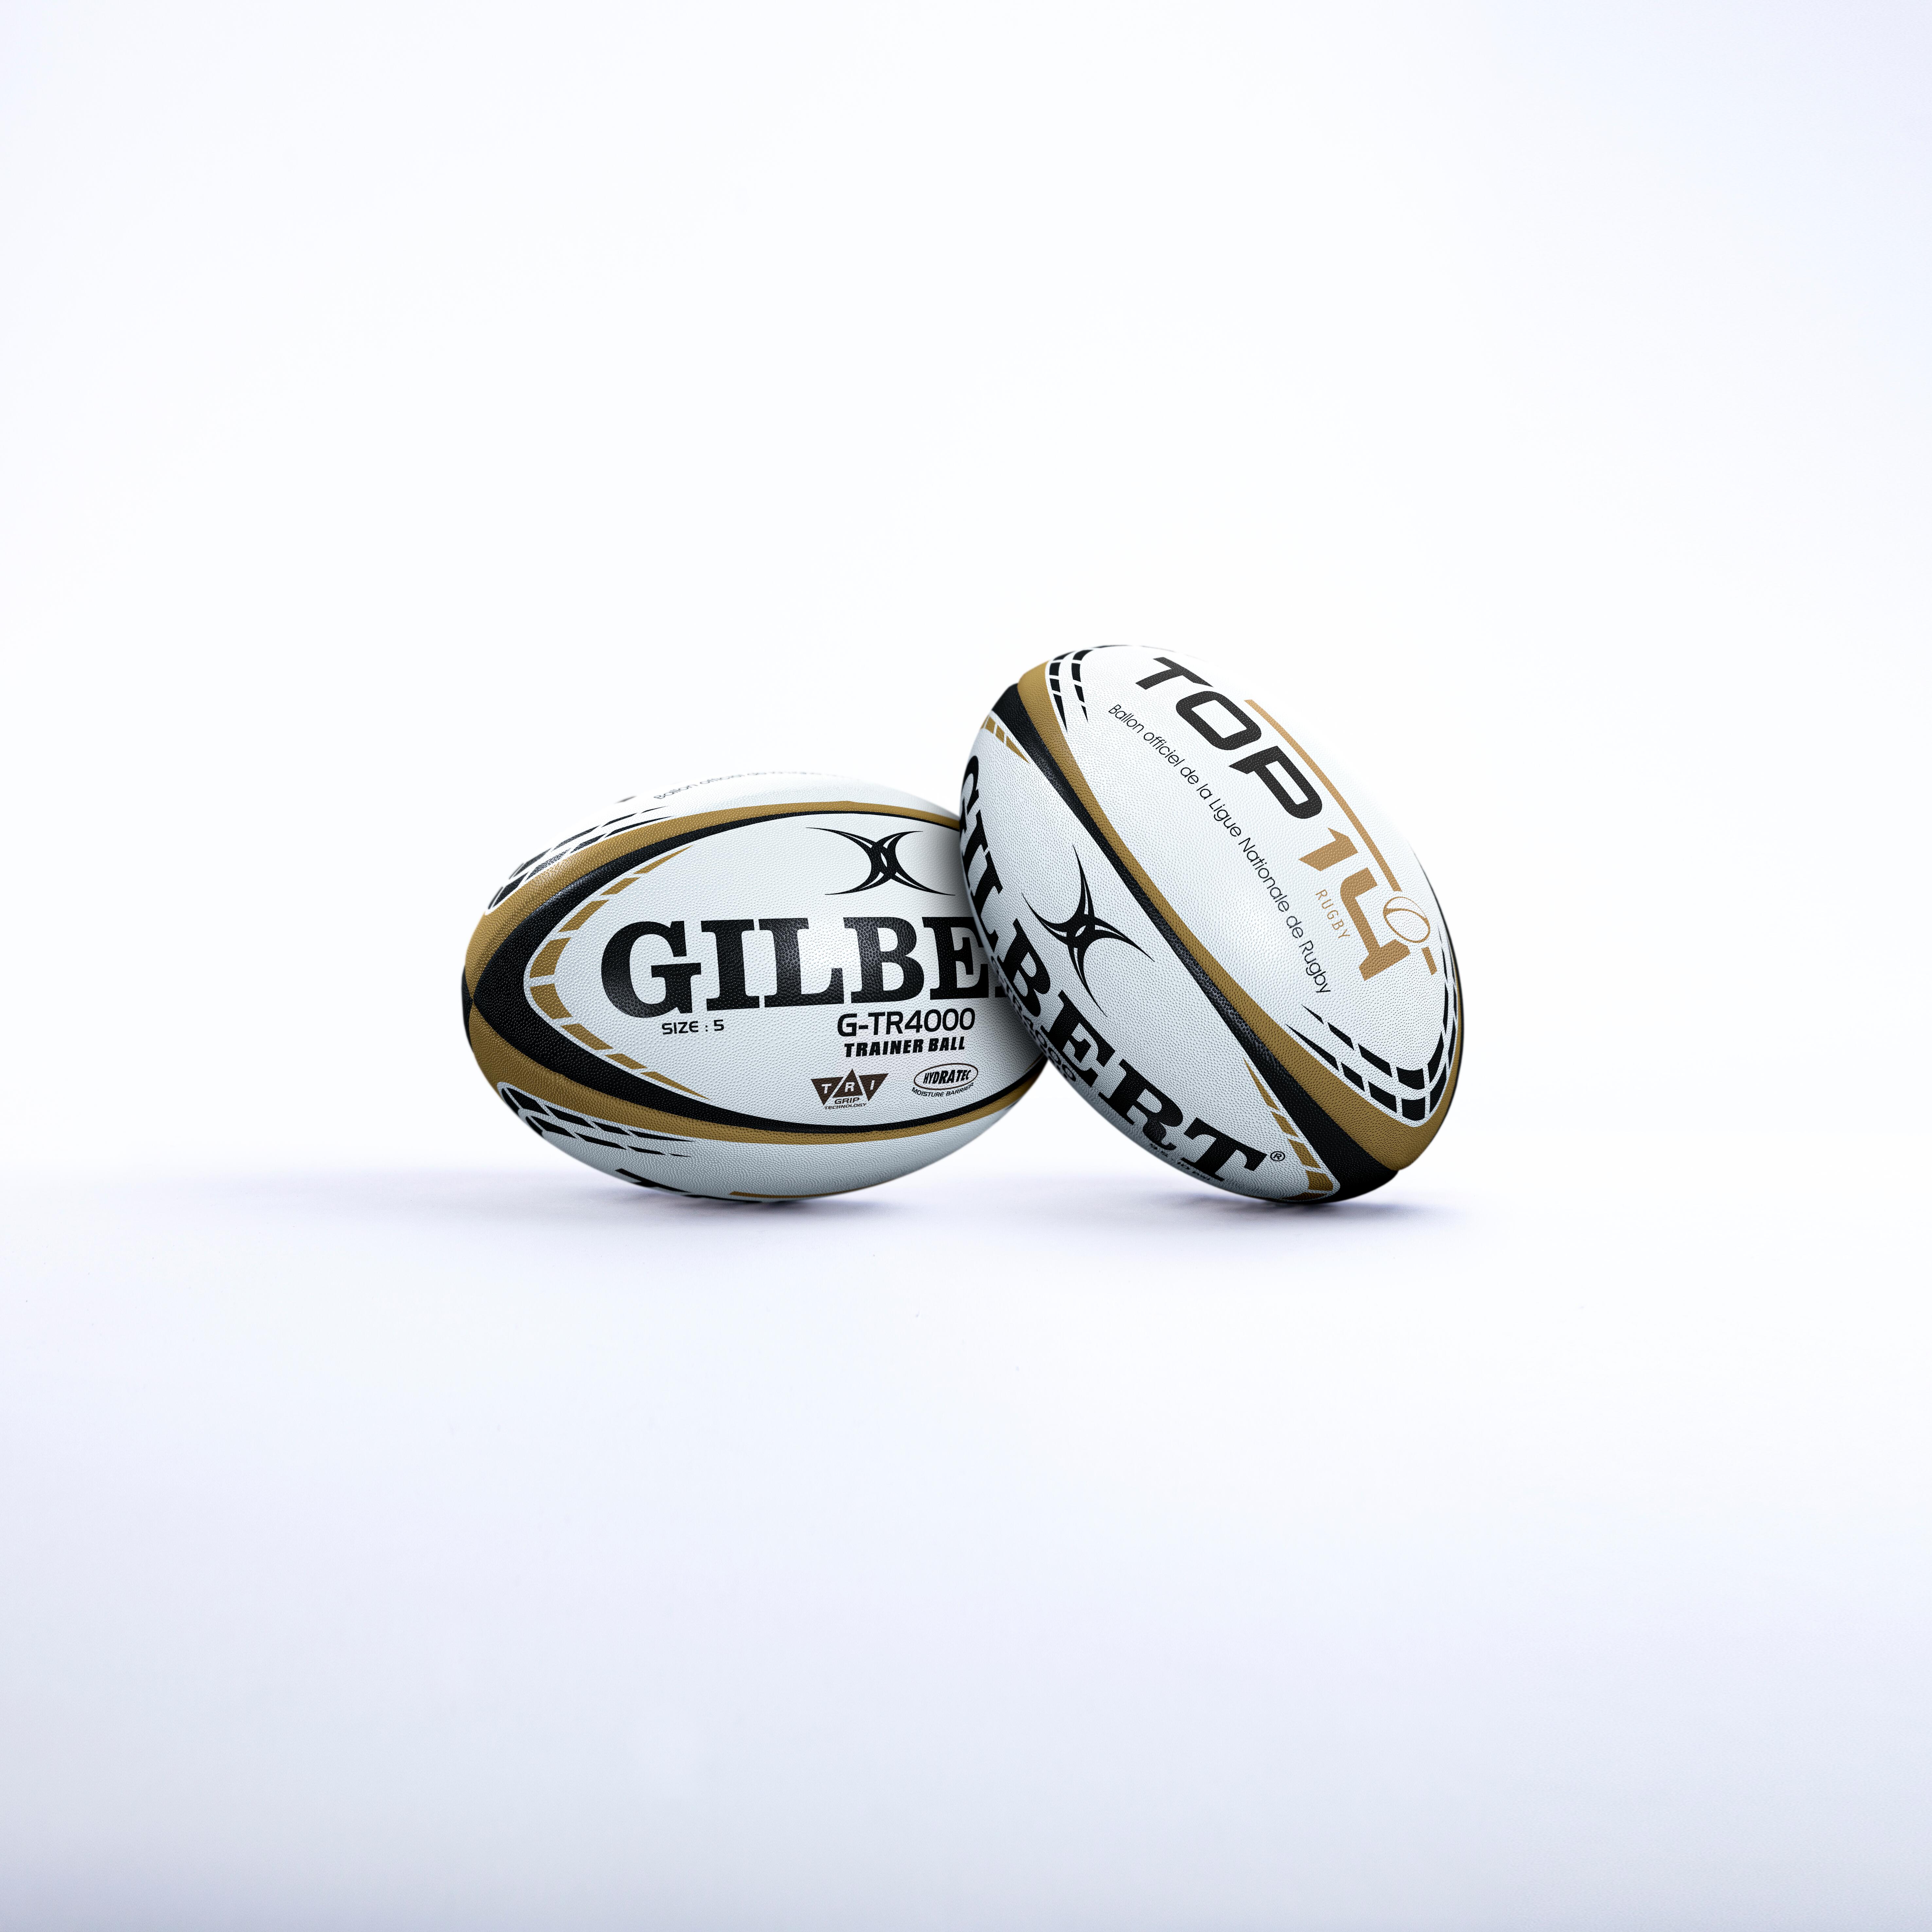 Minge Rugby GILBERT TOP 14 mărimea 5 alb-auriu Accesorii  Mingi rugby si accesorii